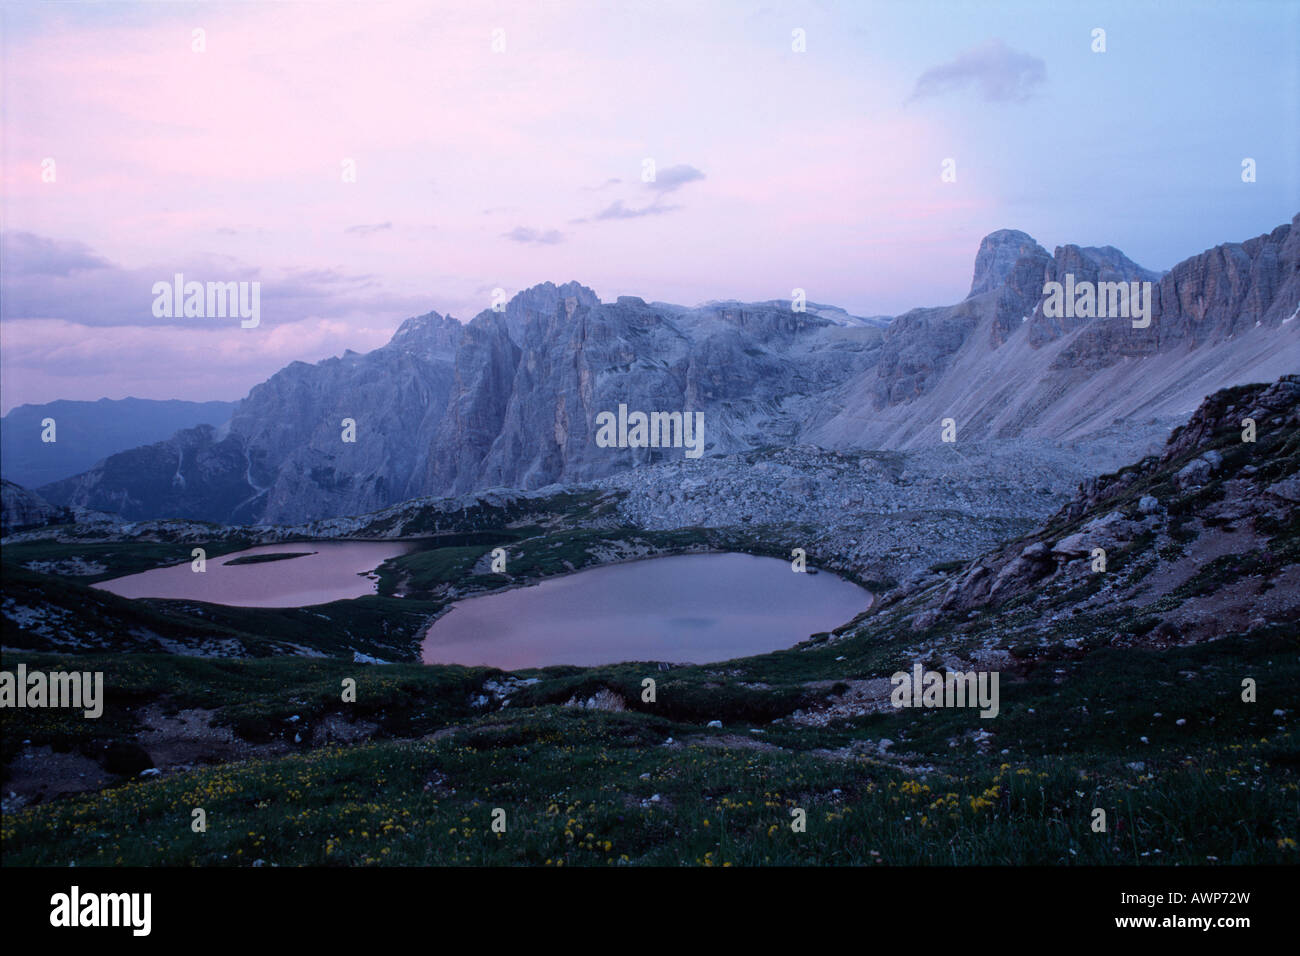 Los lagos alpinos, Mt. Einserkogel, dolomitas, Bolzano-Bozen Sexten, Italia, Europa Foto de stock